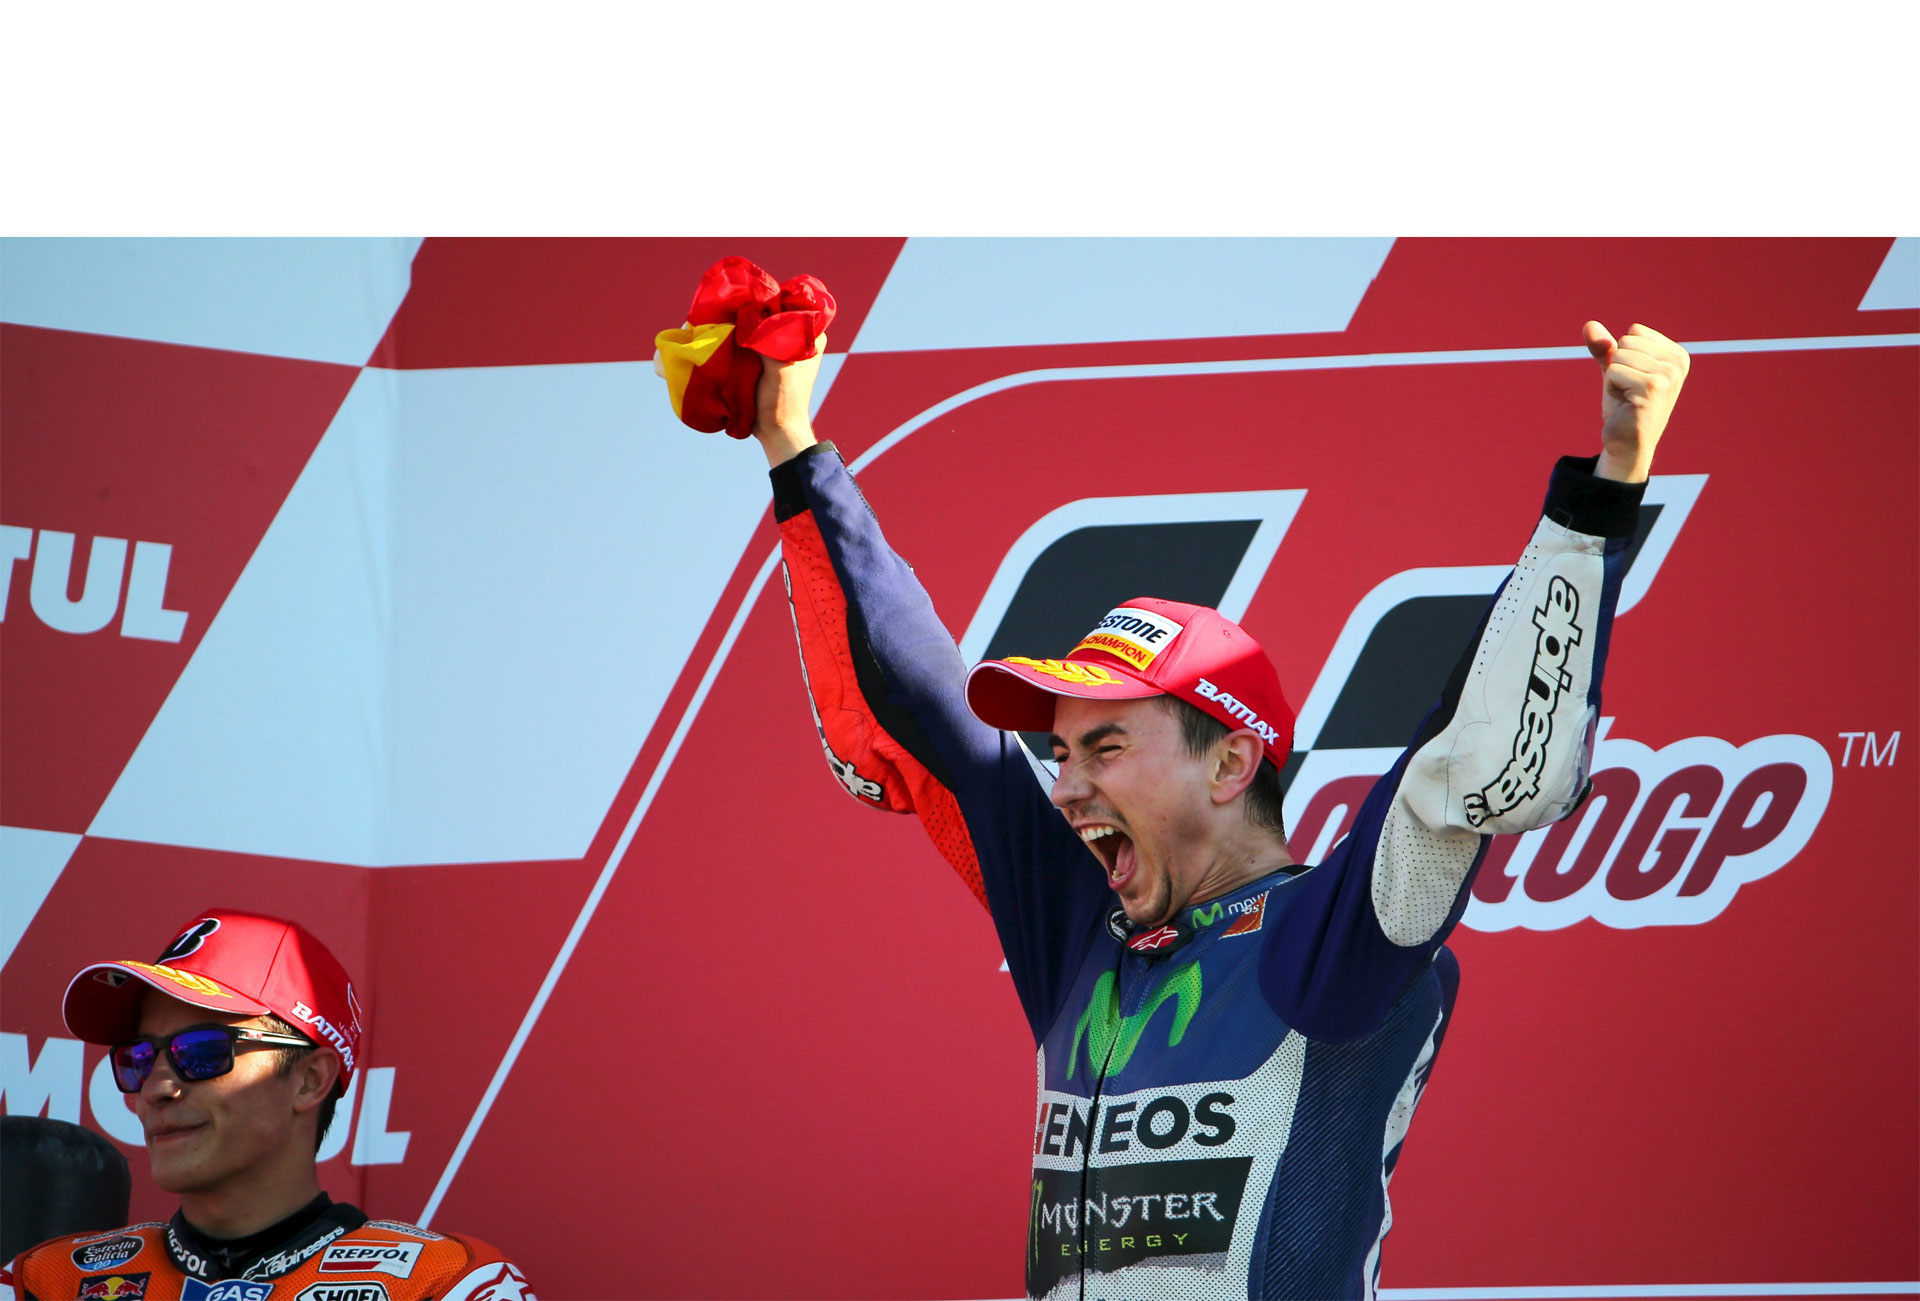 El español conquistó su quinto título mundial MotoGP y dedicó su premio a la gente que no se rinde y no escucha las críticas